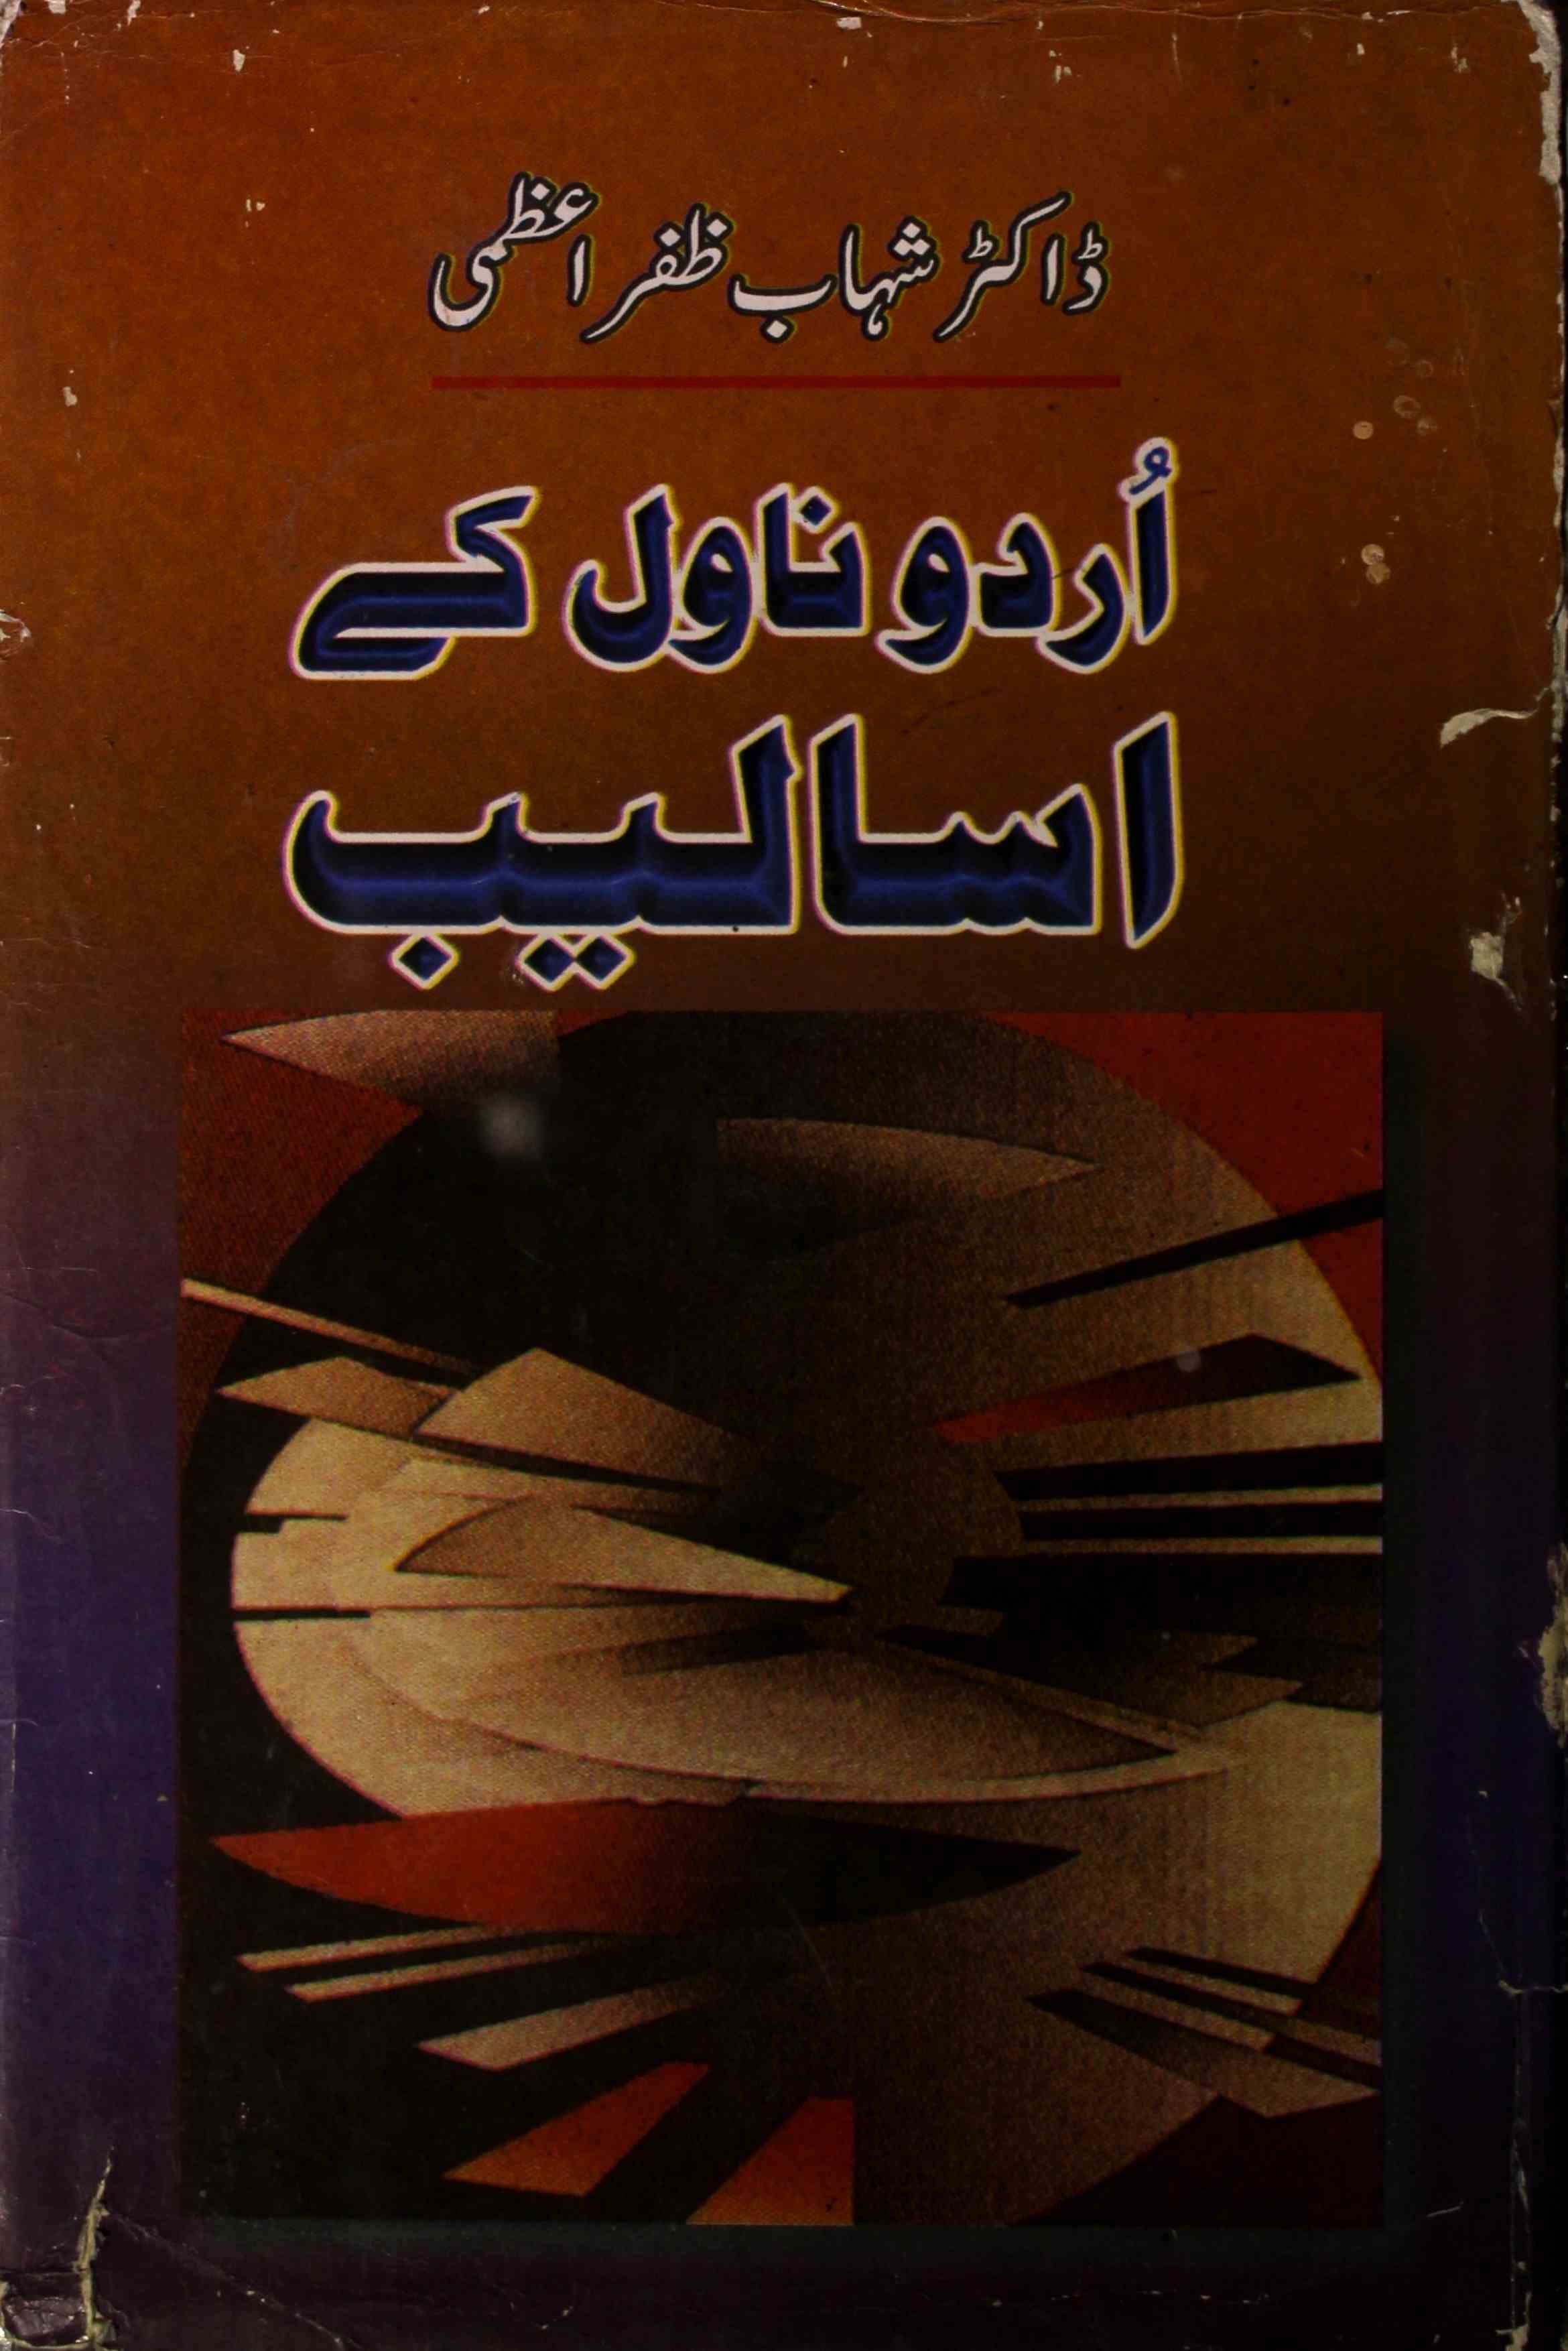 اردو ناول کے اسالیب